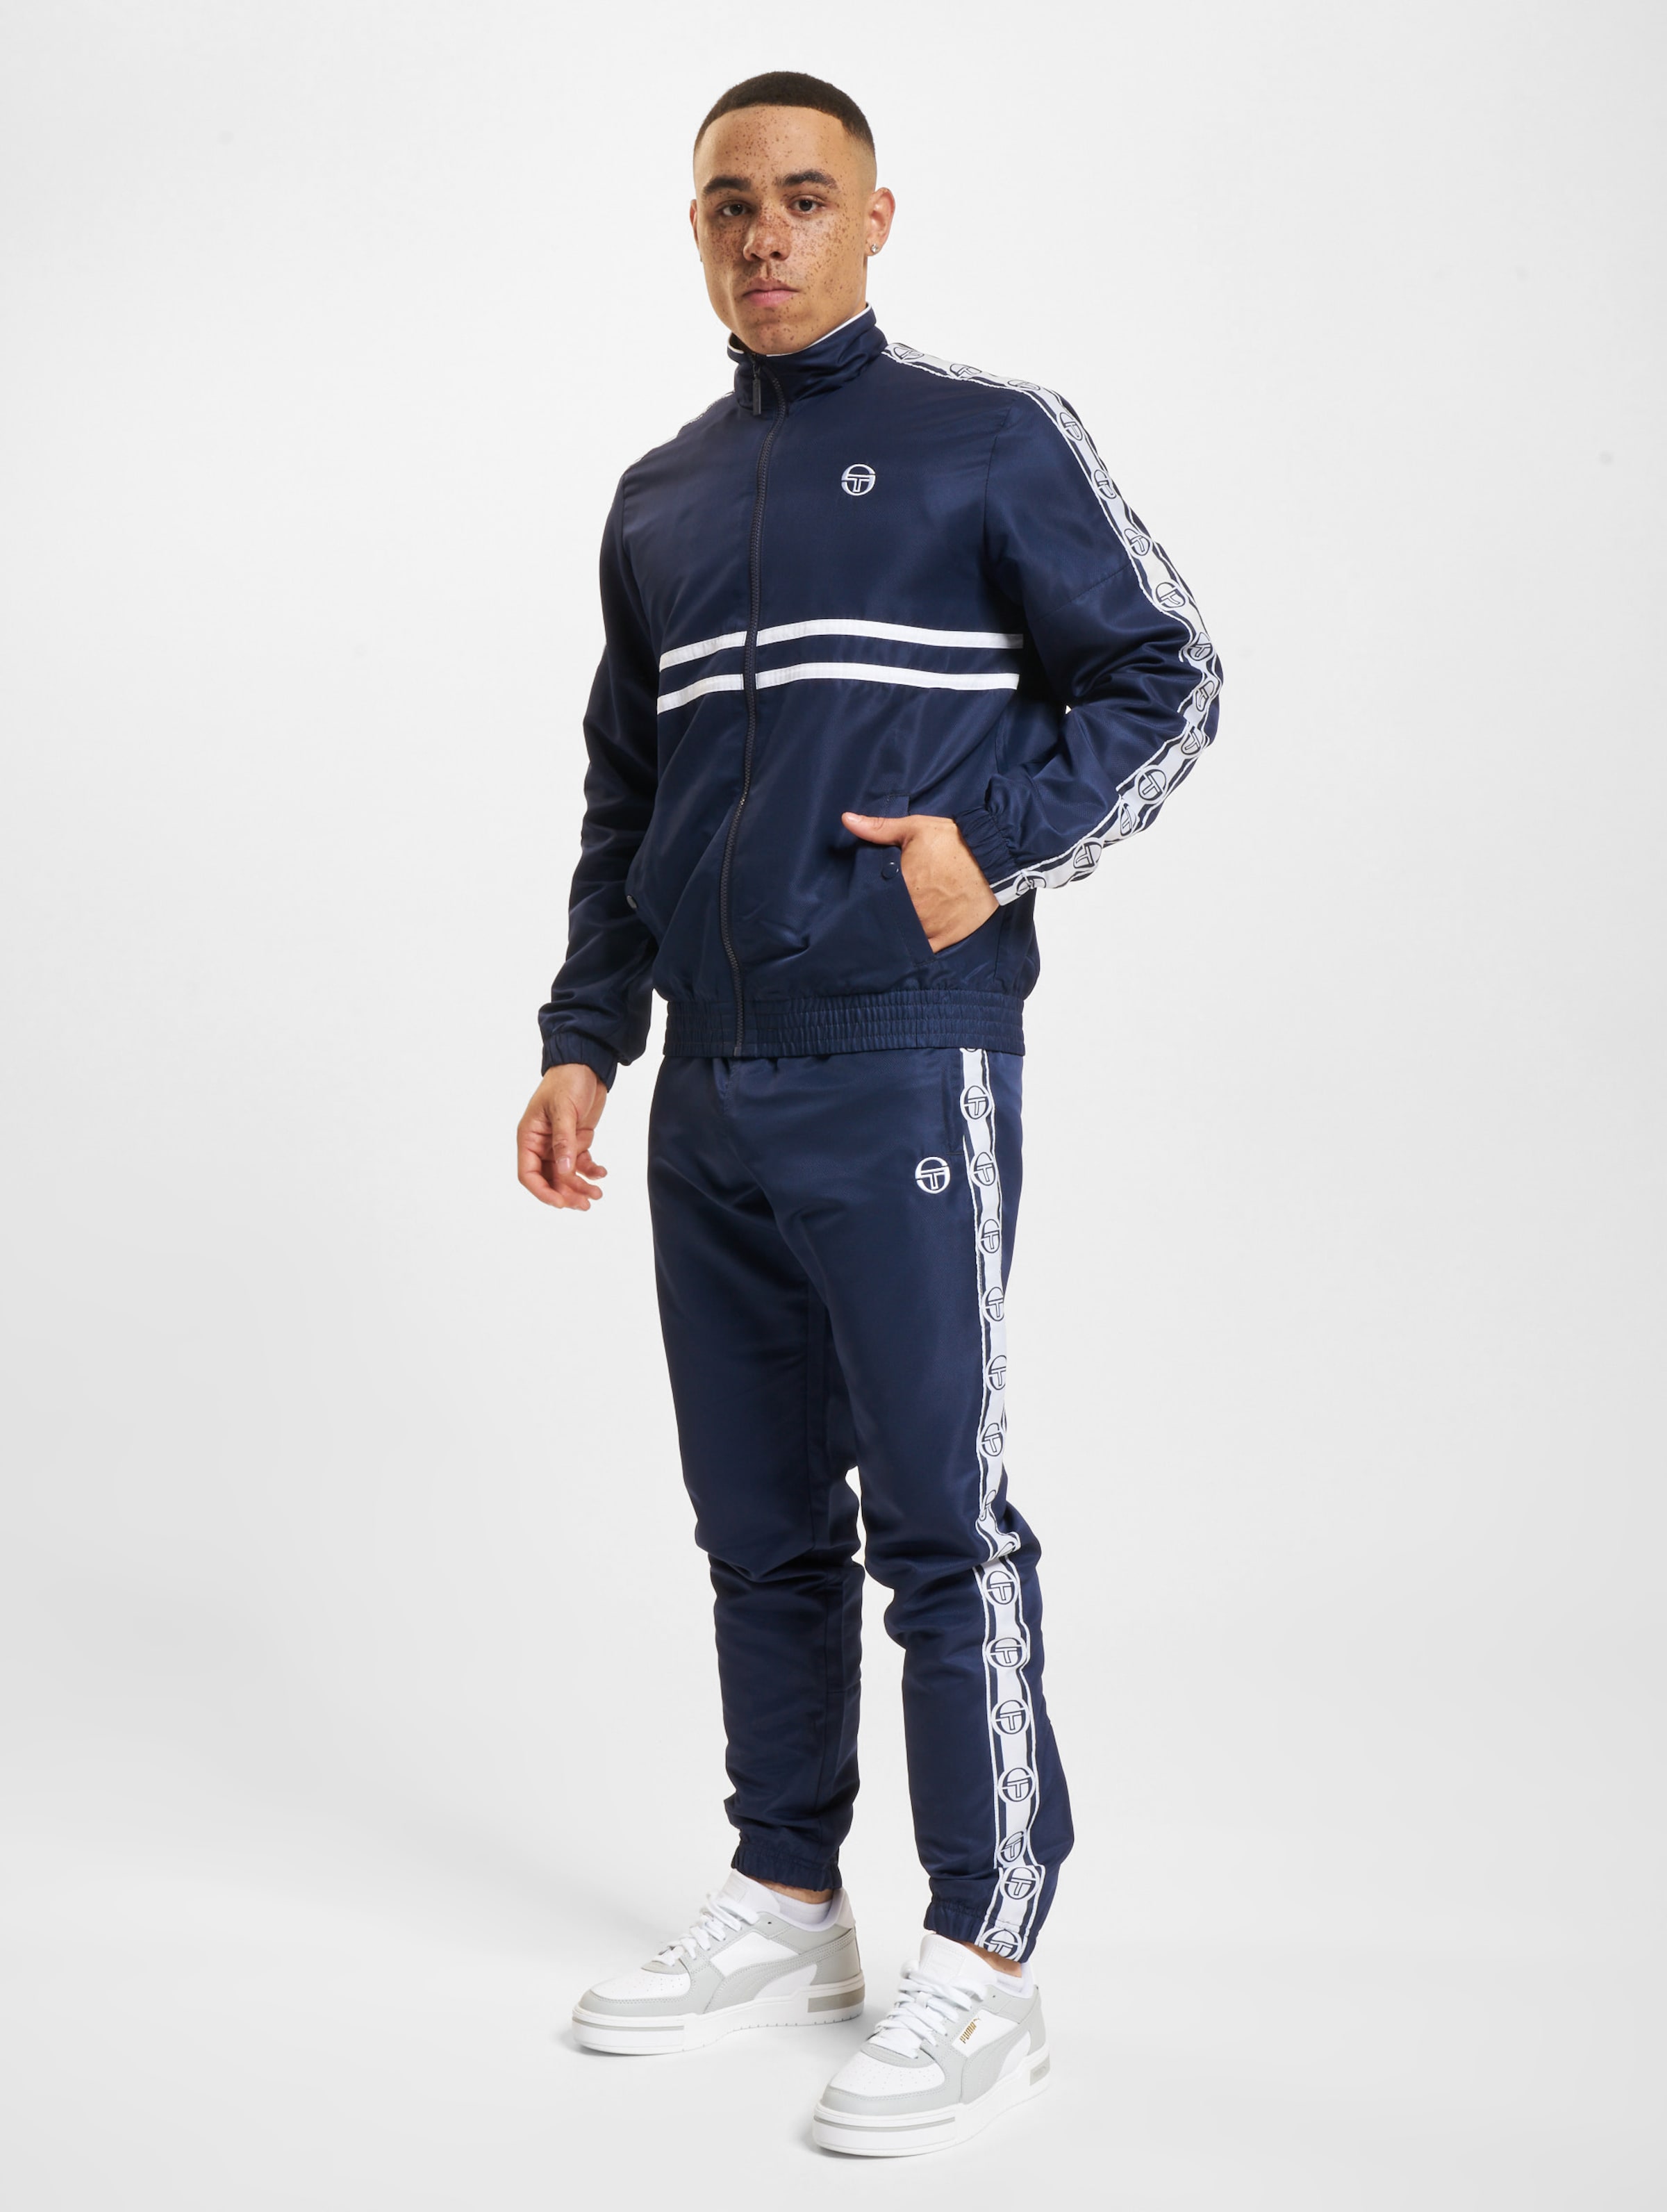 Sergio Tacchini Doral Trainingsanzug Männer,Unisex op kleur blauw, Maat L